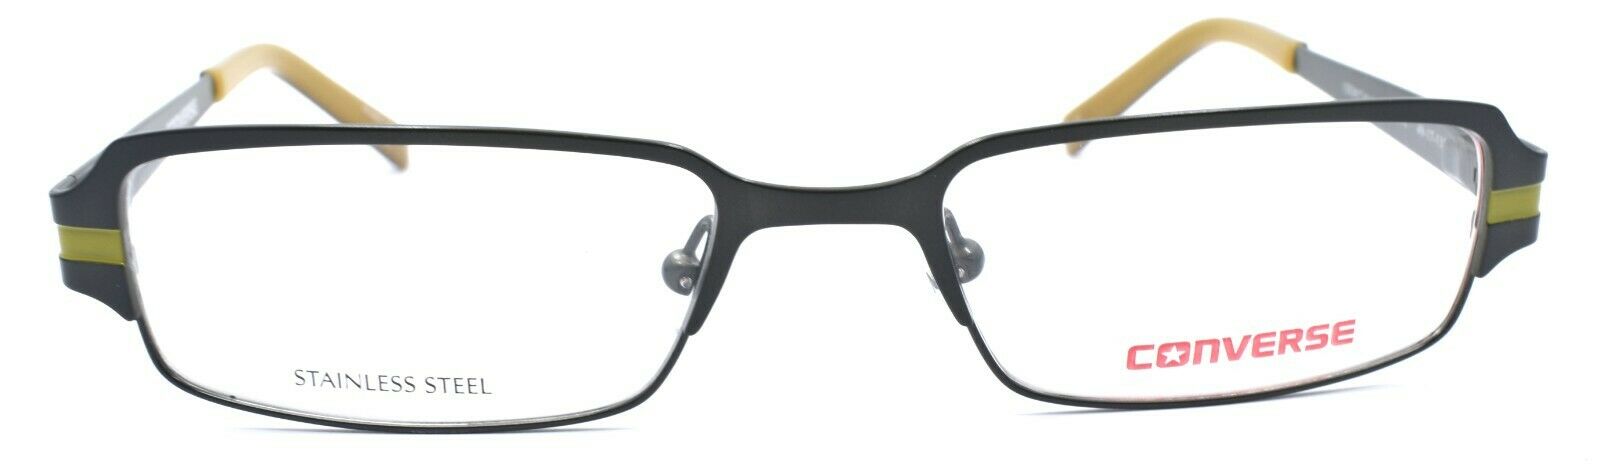 2-CONVERSE I Don't Know Kids Eyeglasses Frames 49-17-135 Olive Green + CASE-751286227031-IKSpecs